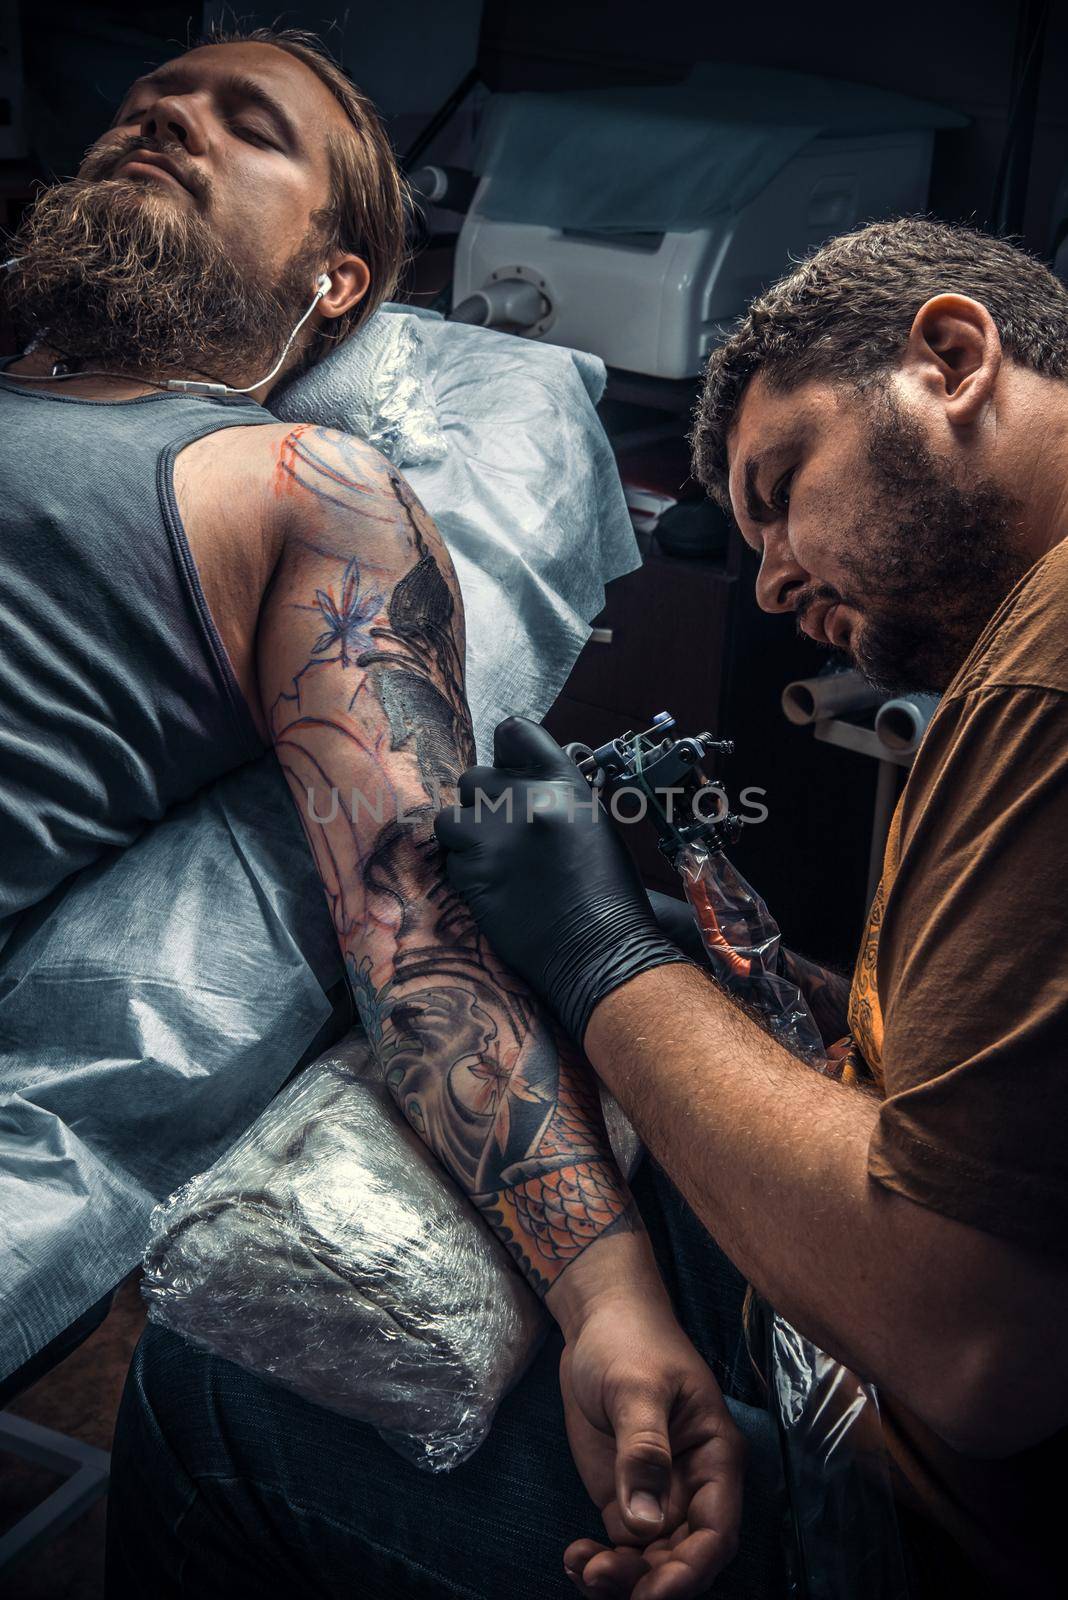 Professional tattooer create tattoo in tattoo studio./Professional tattooist makes tattoo in tattoo parlor.